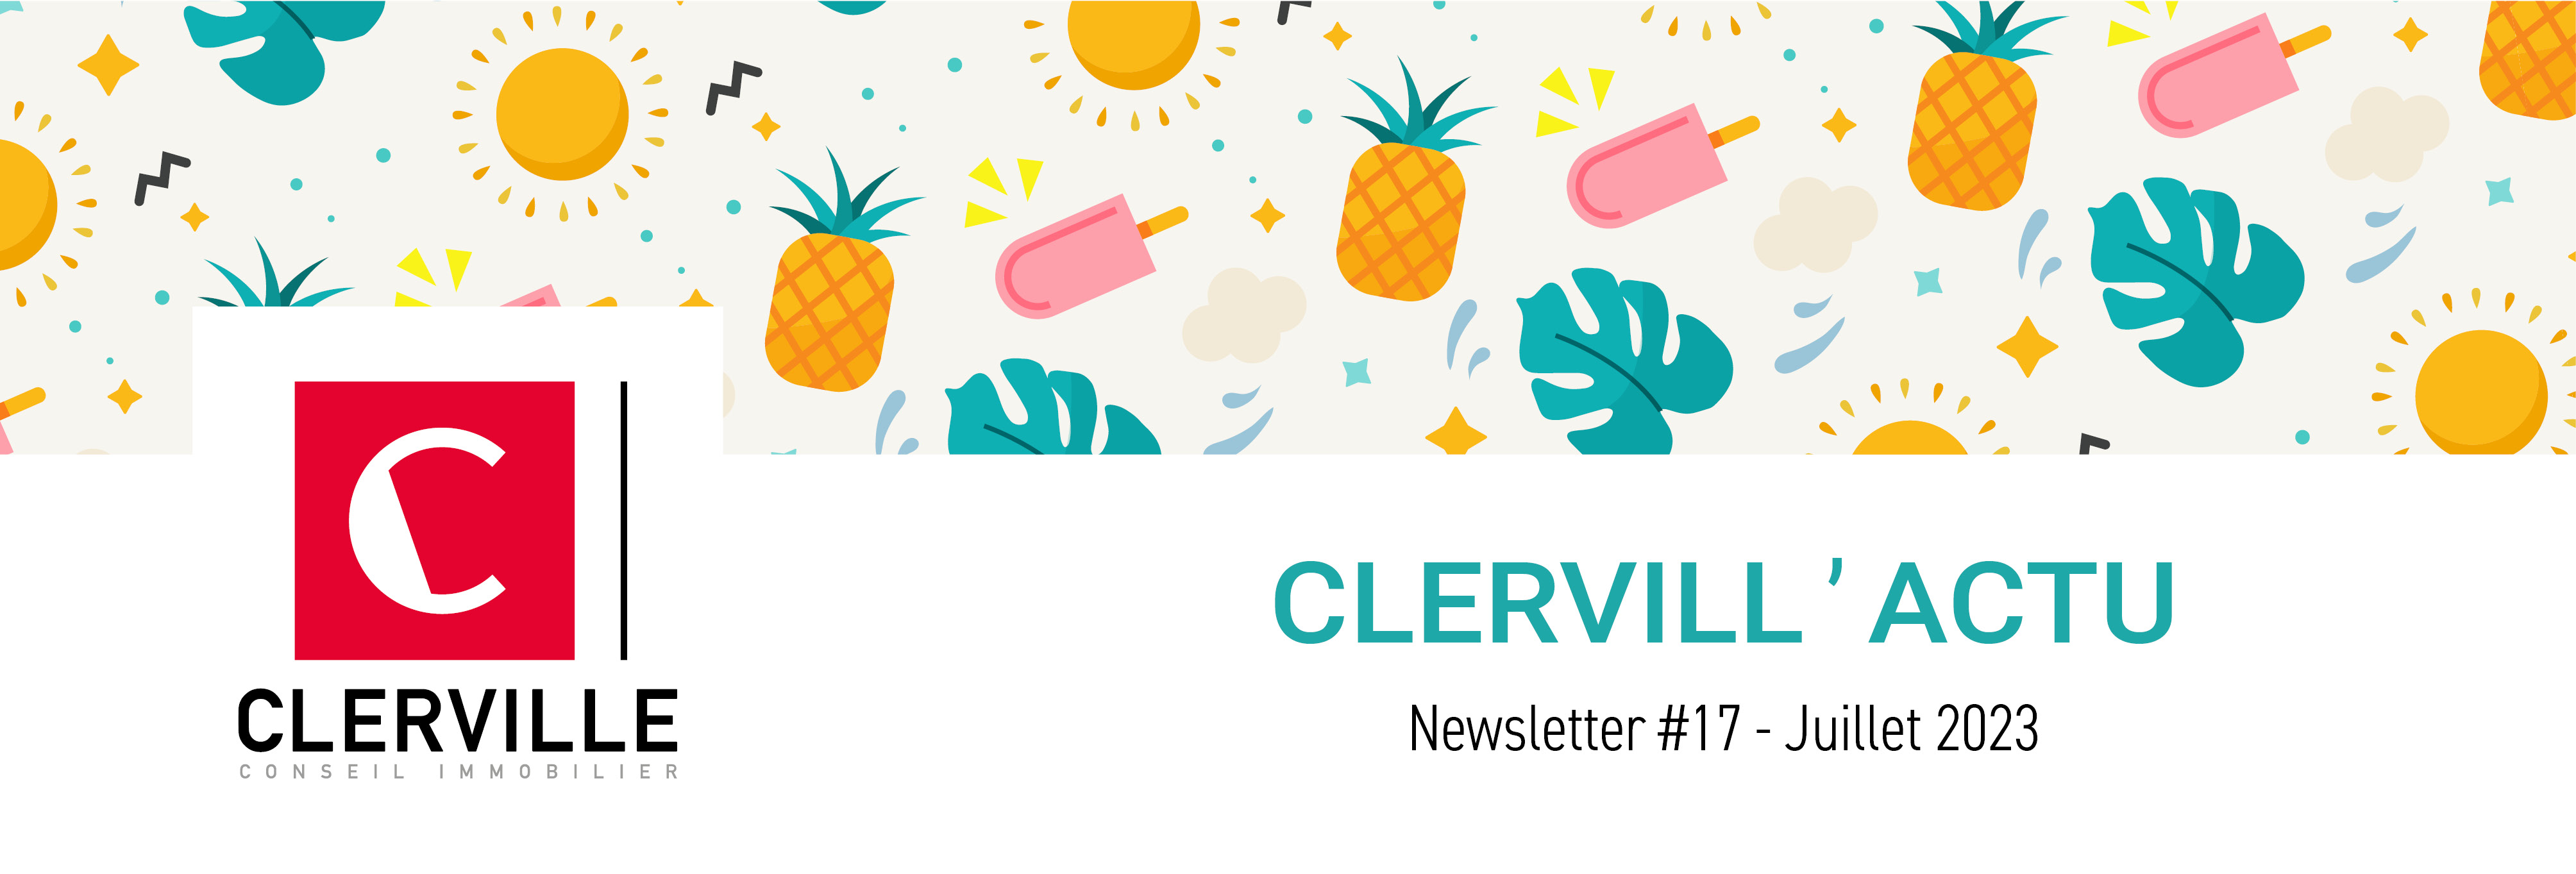 Newsletter CLERVILLE #17 - Edition de l'Eté - Juillet 2023